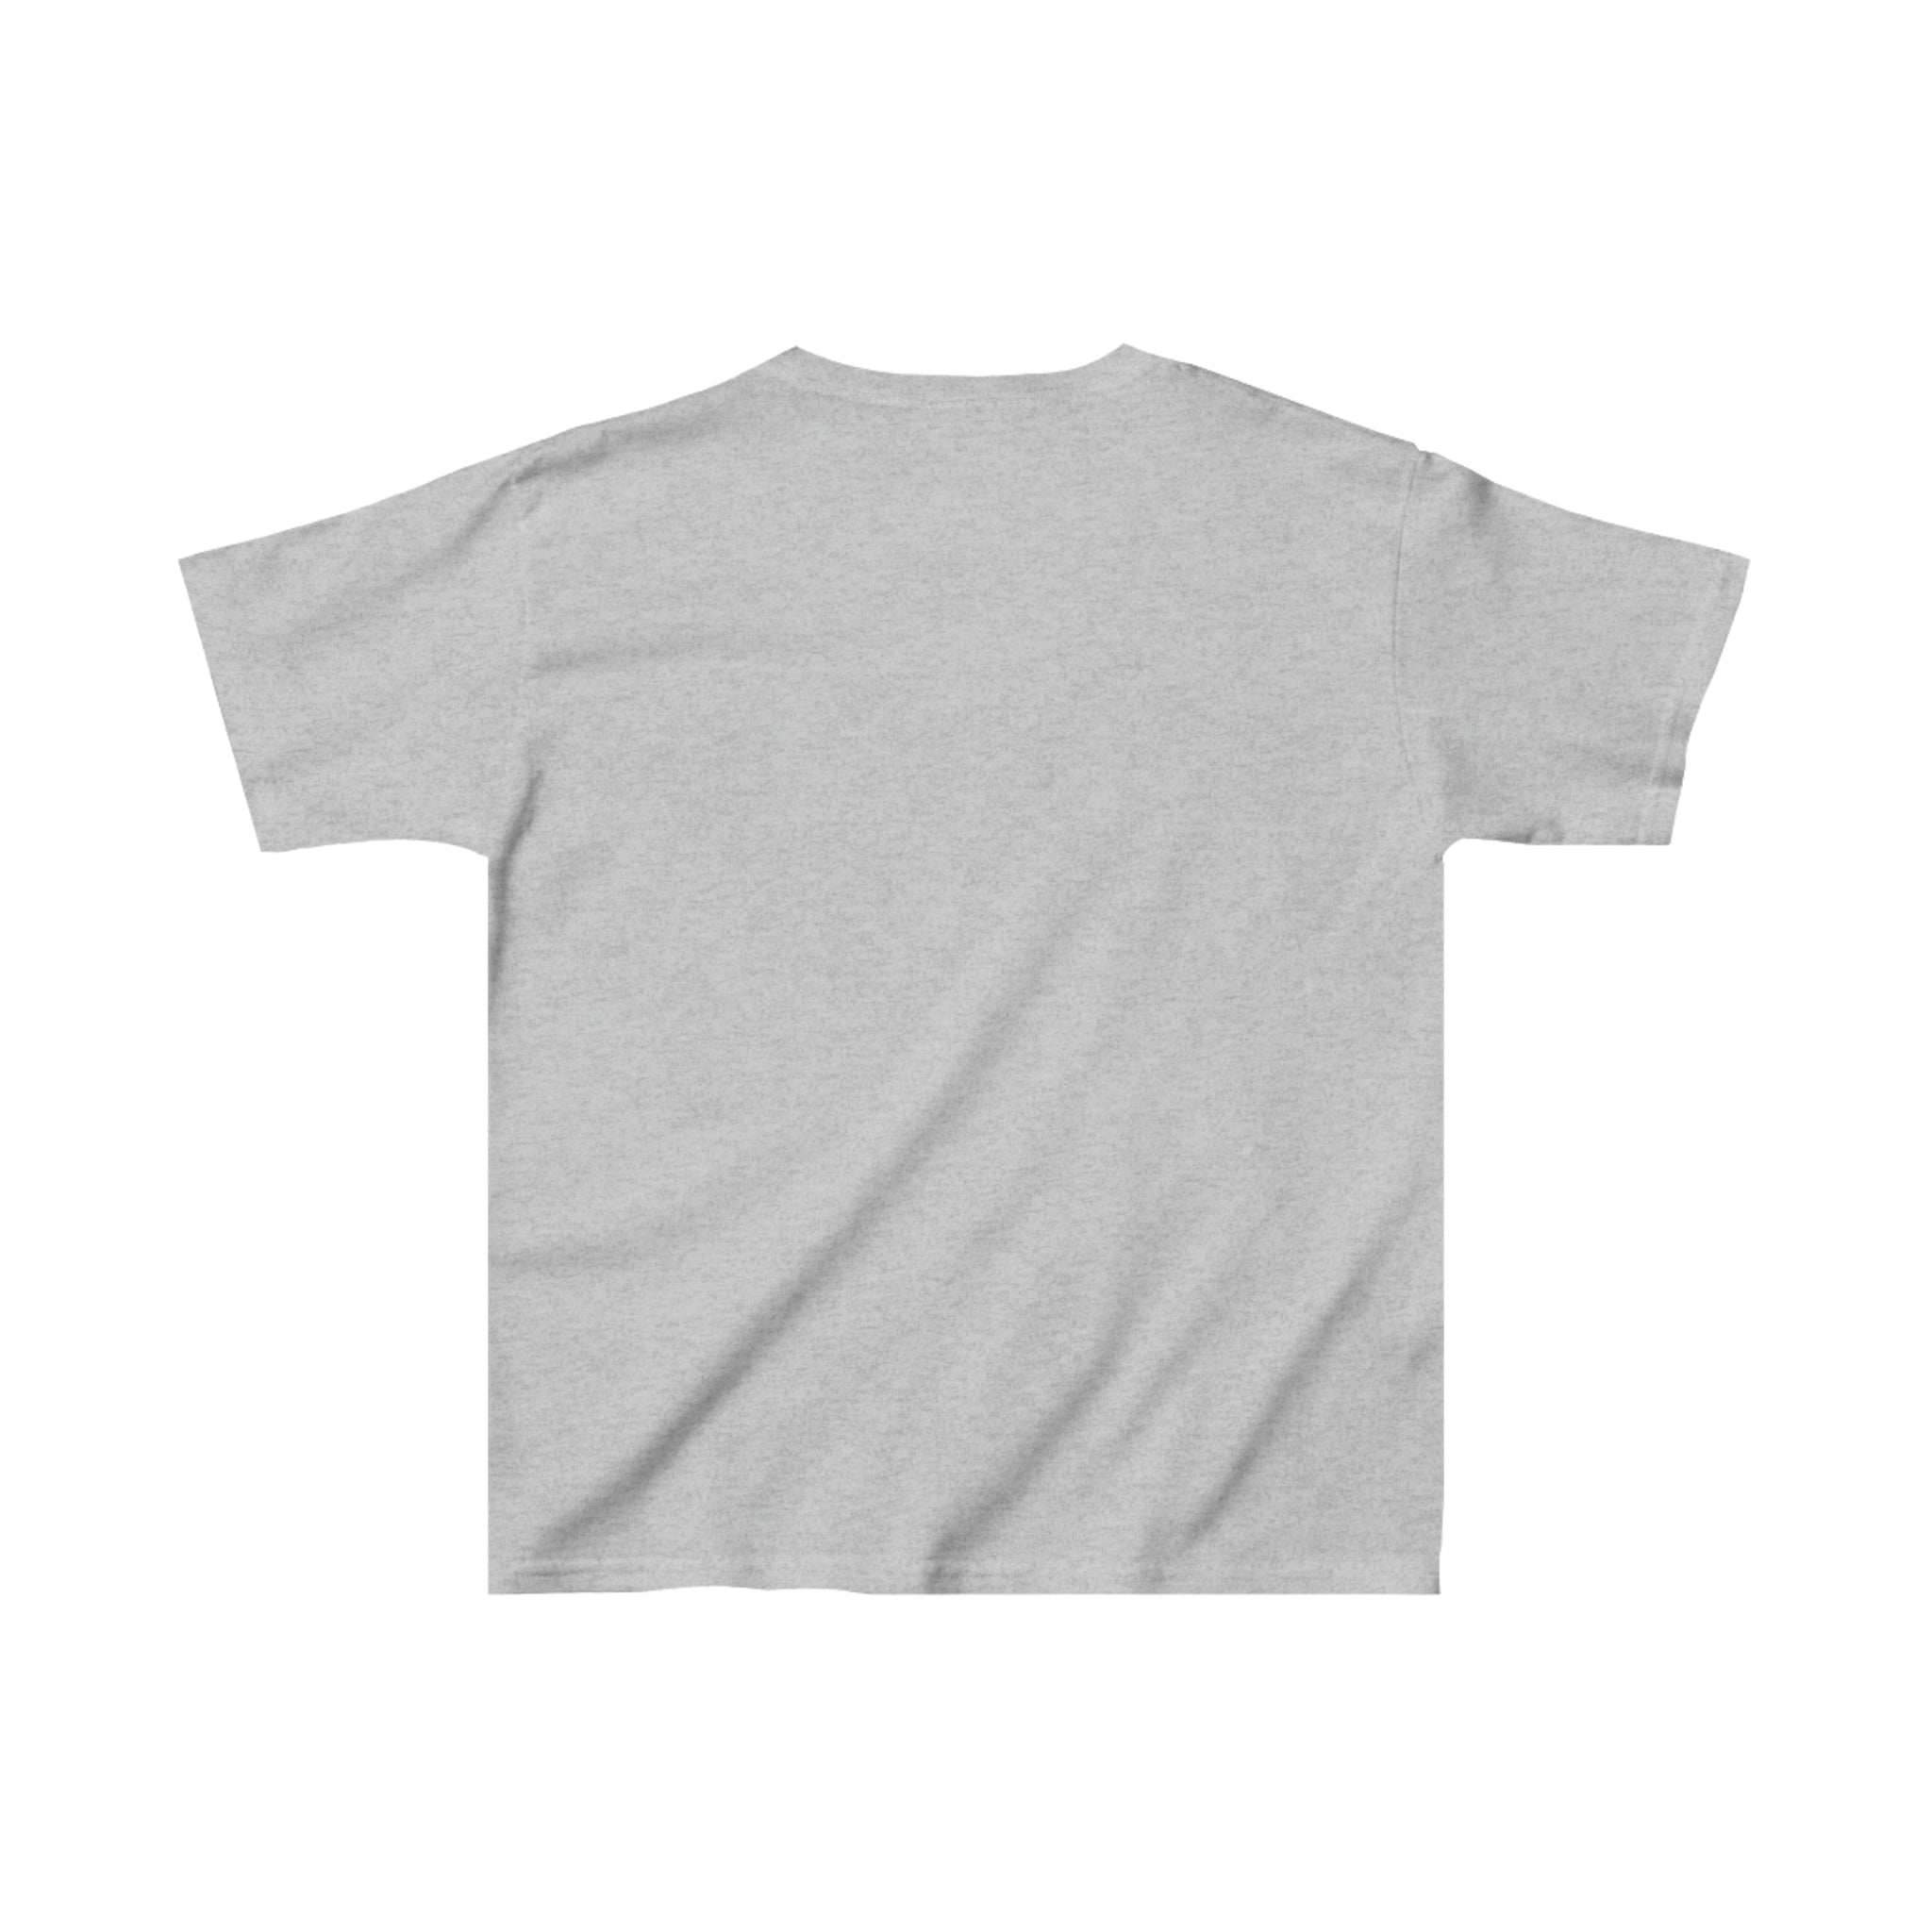 Florida Rockets T-Shirt (Youth)